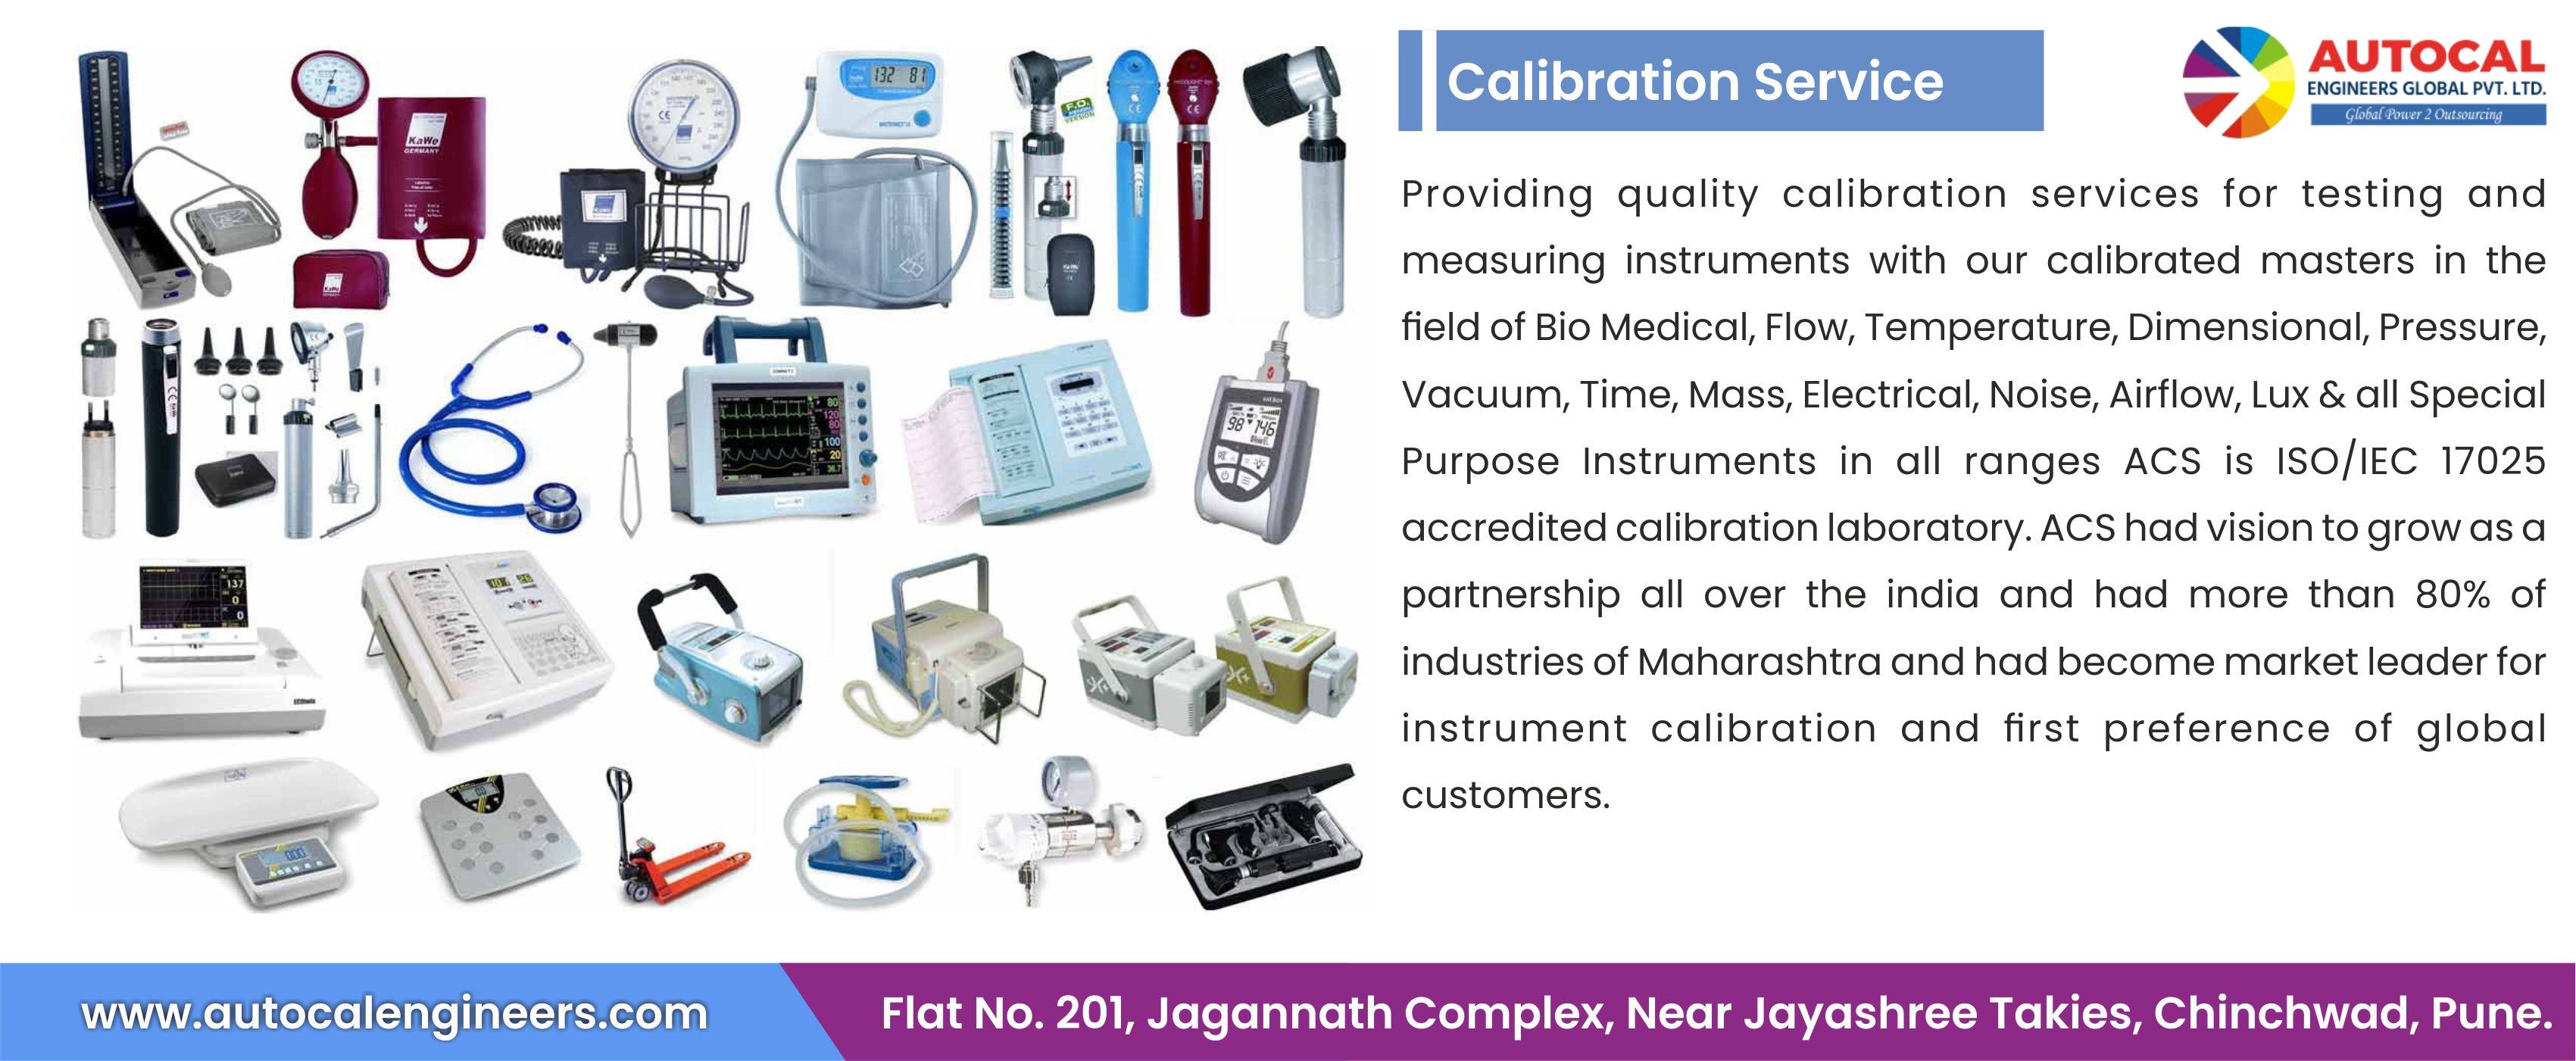 Callibration Equipment